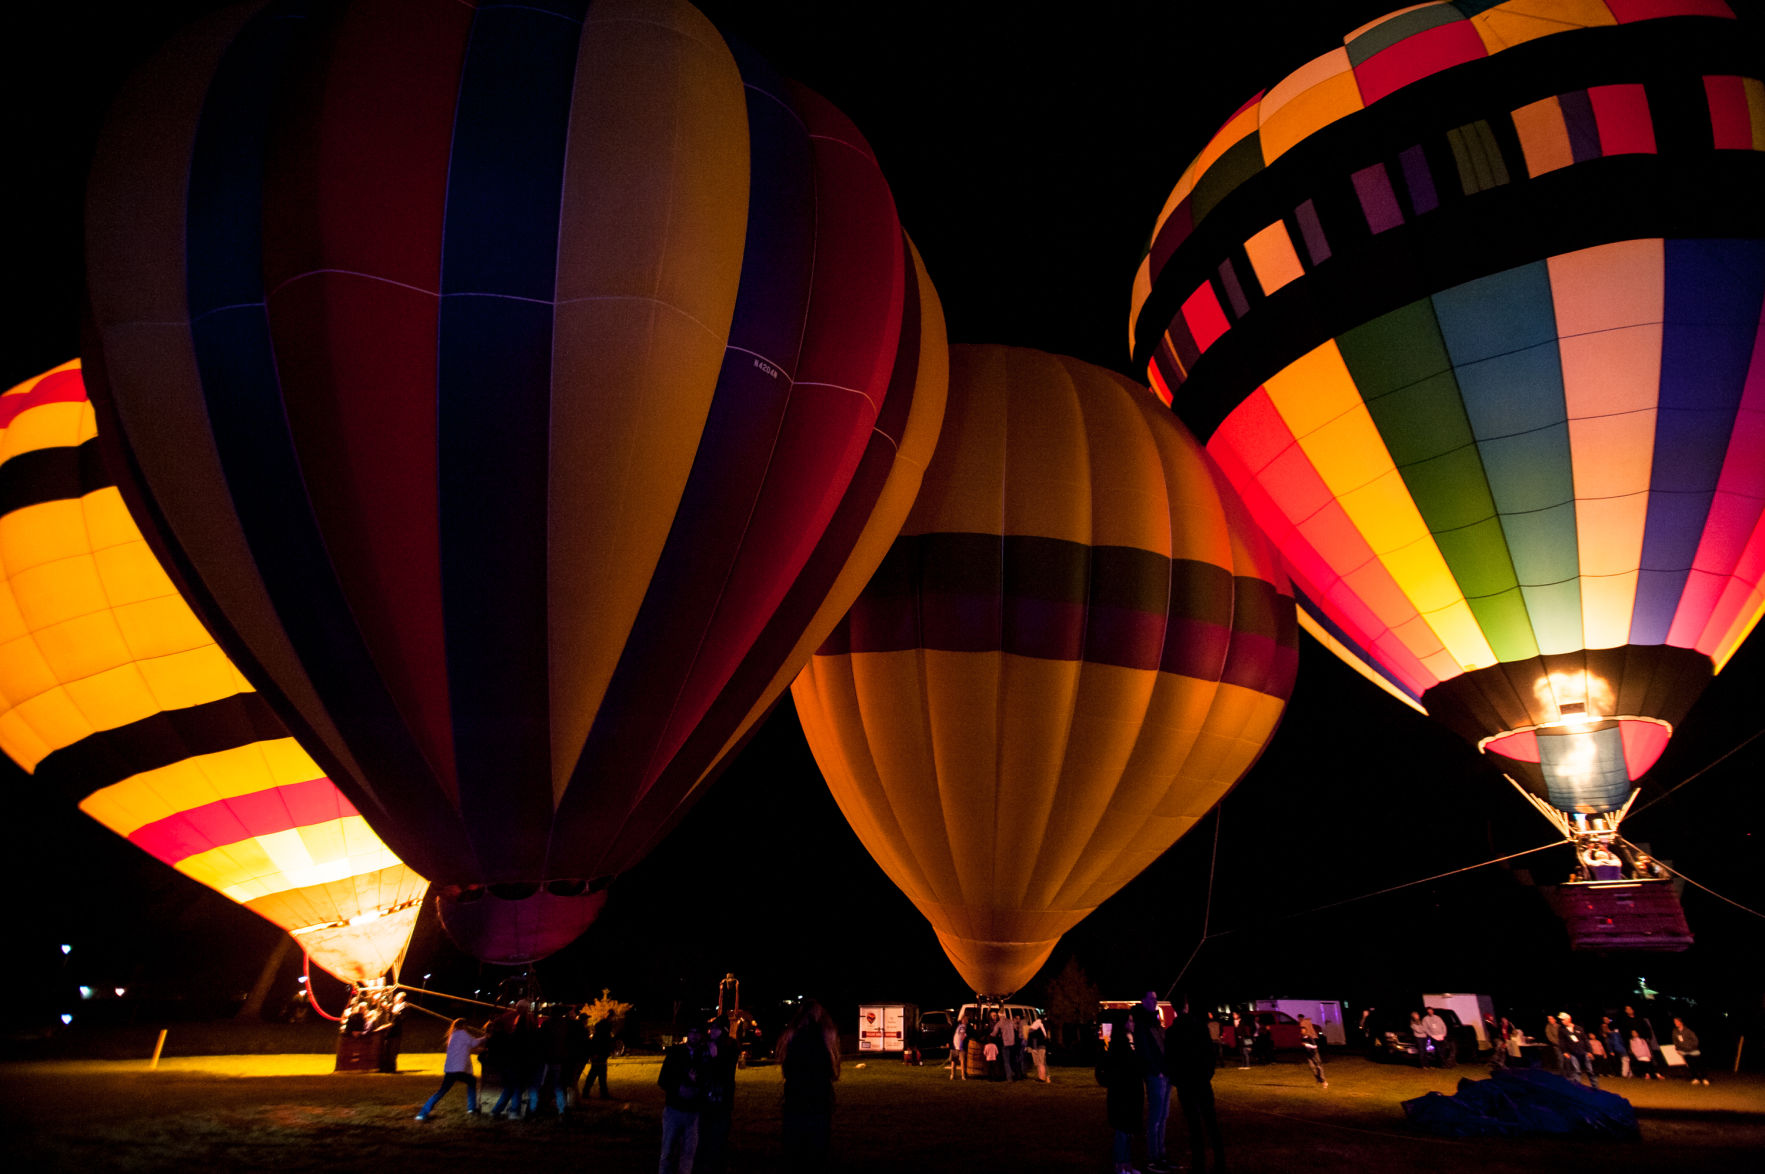 hot air balloon festival this weekend